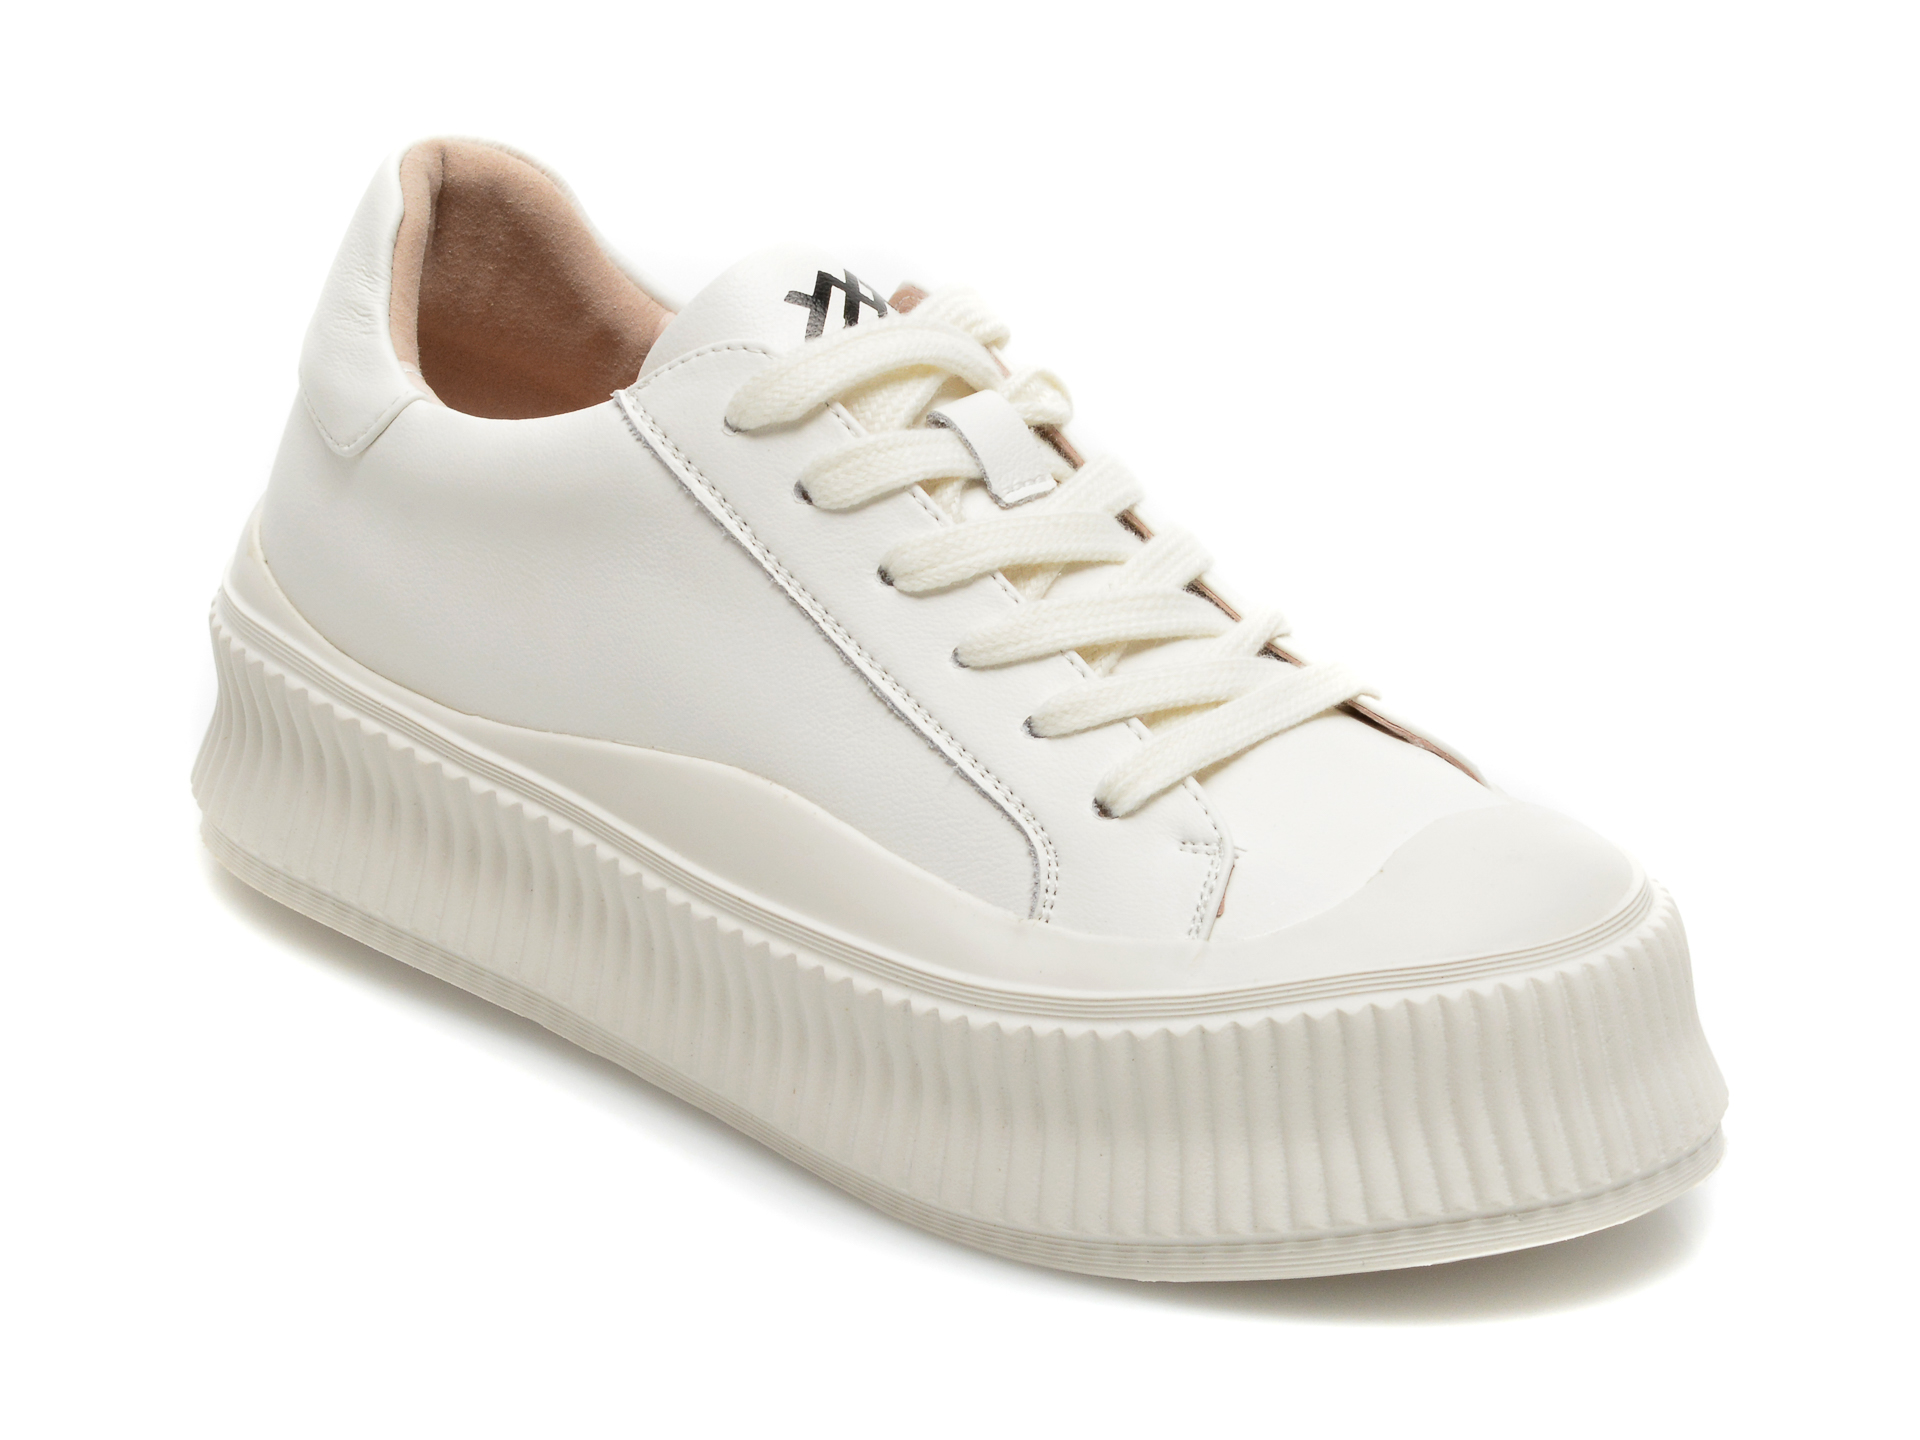 Pantofi sport GRYXX albi, B692, din piele naturala Gryxx Gryxx